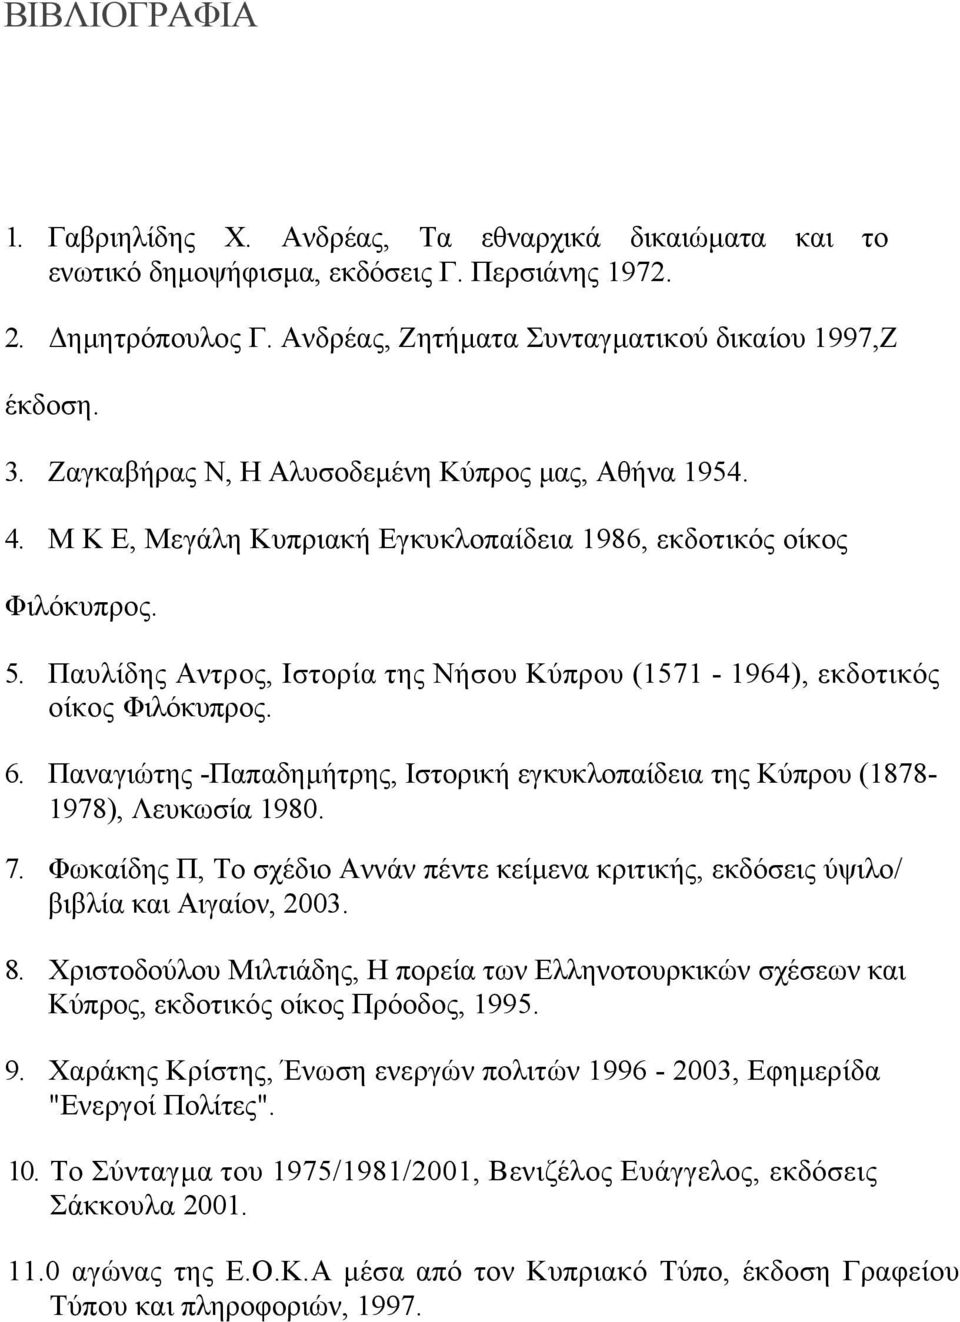 Παυλίδης Αντρος, Ιστορία της Νήσου Κύπρου (1571-1964), εκδοτικός οίκος Φιλόκυπρος. 6. Παναγιώτης -Παπαδηµήτρης, Ιστορική εγκυκλοπαίδεια της Κύπρου (1878-1978), Λευκωσία 1980. 7.